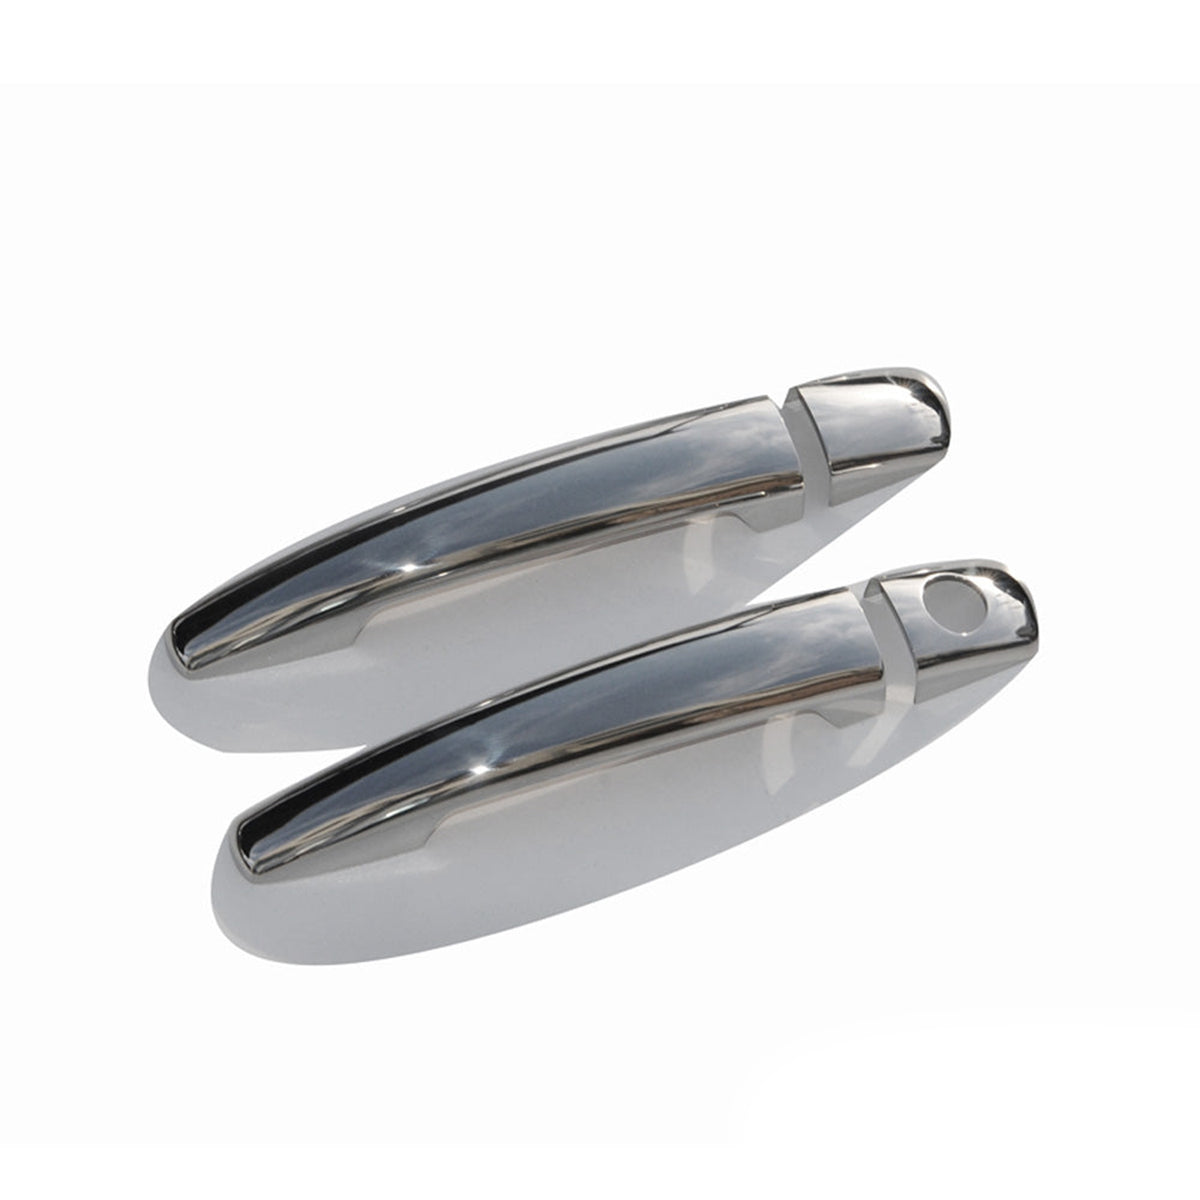 Türgriff Blende Türgriffkappen für Peugeot 207 2006-2015 Edelstahl Silber 4tlg